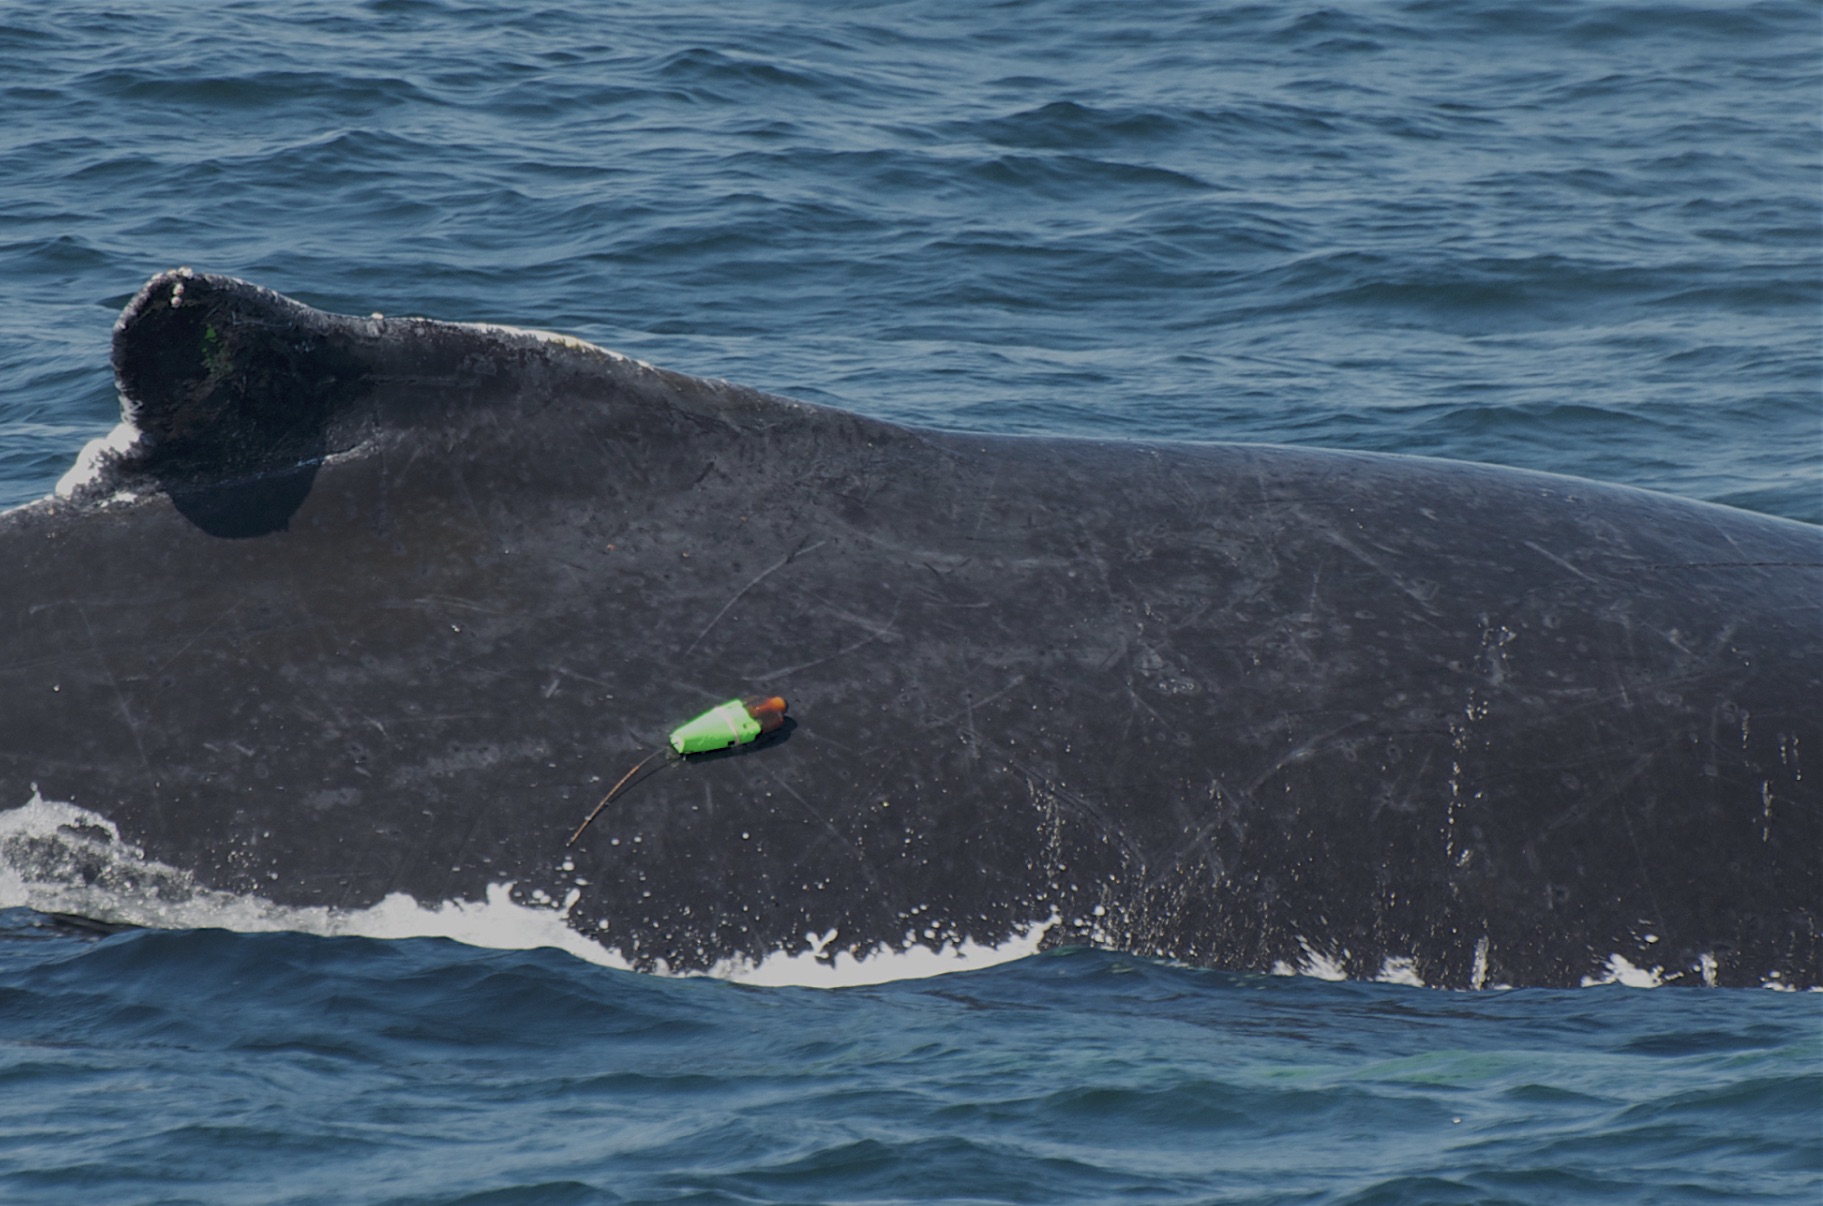 Acousonde tag on a humpback